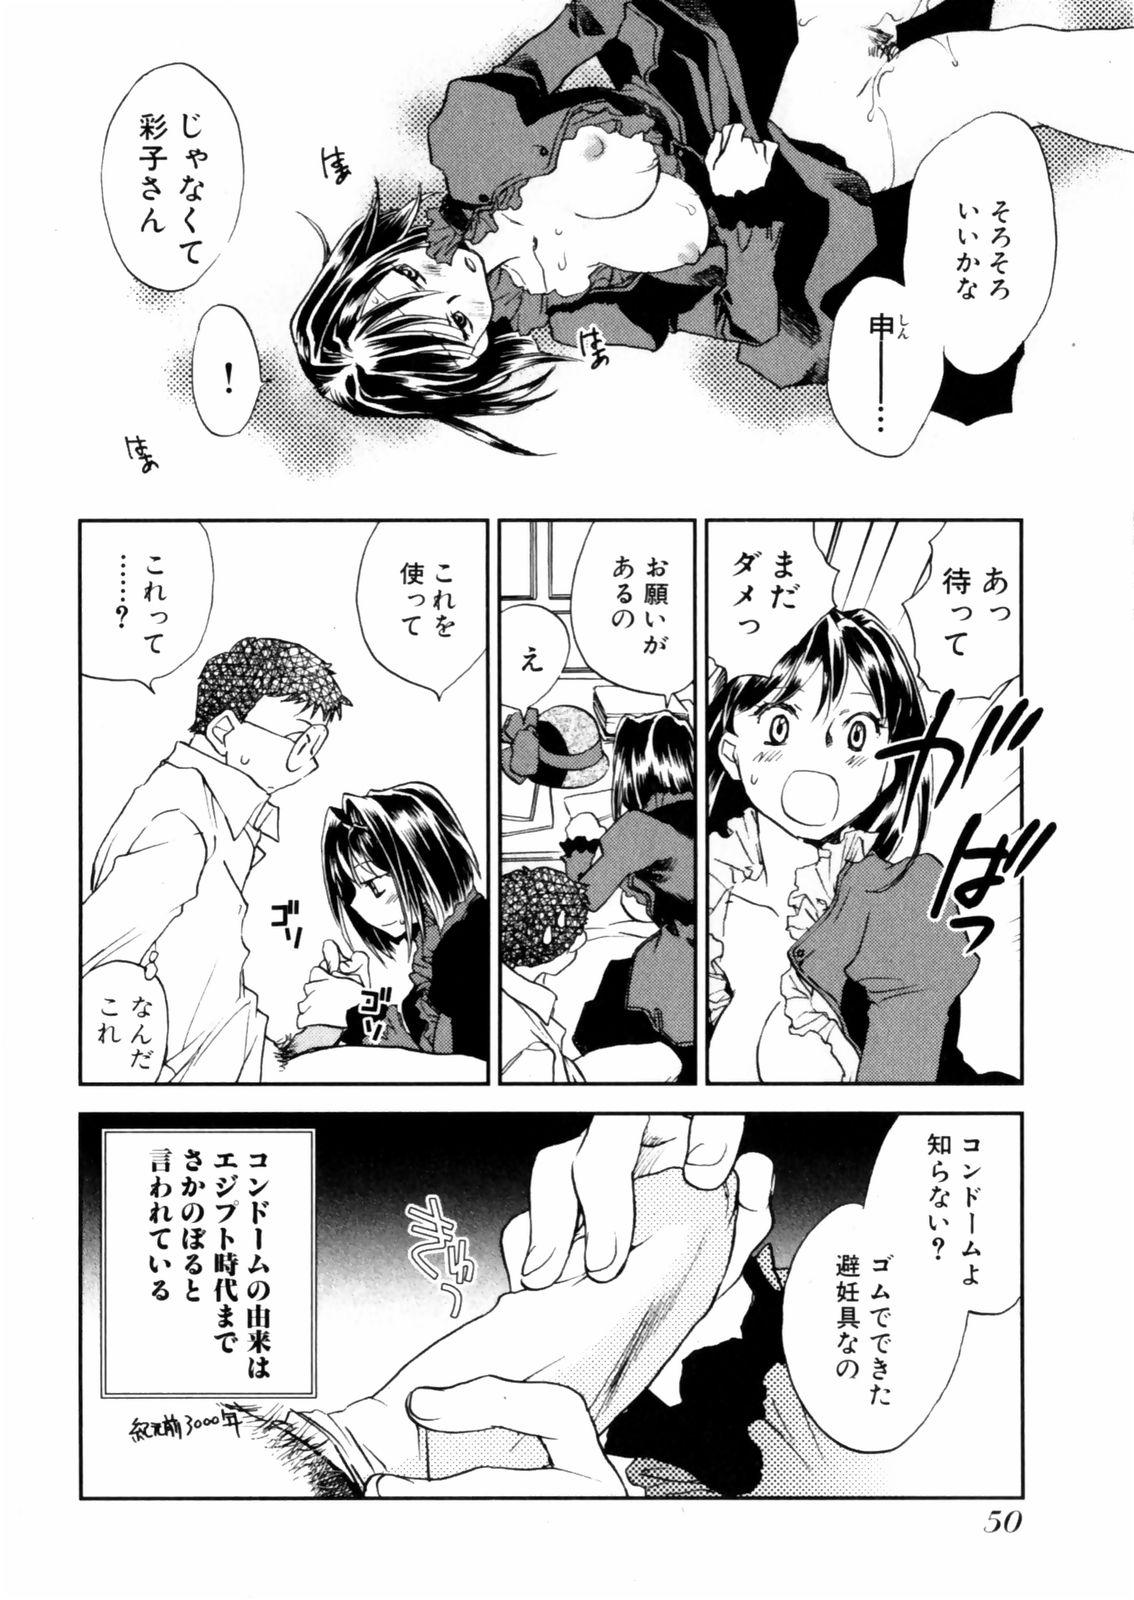 [Okano Ahiru] Hanasake ! Otome Juku (Otome Private Tutoring School) Vol.2 51